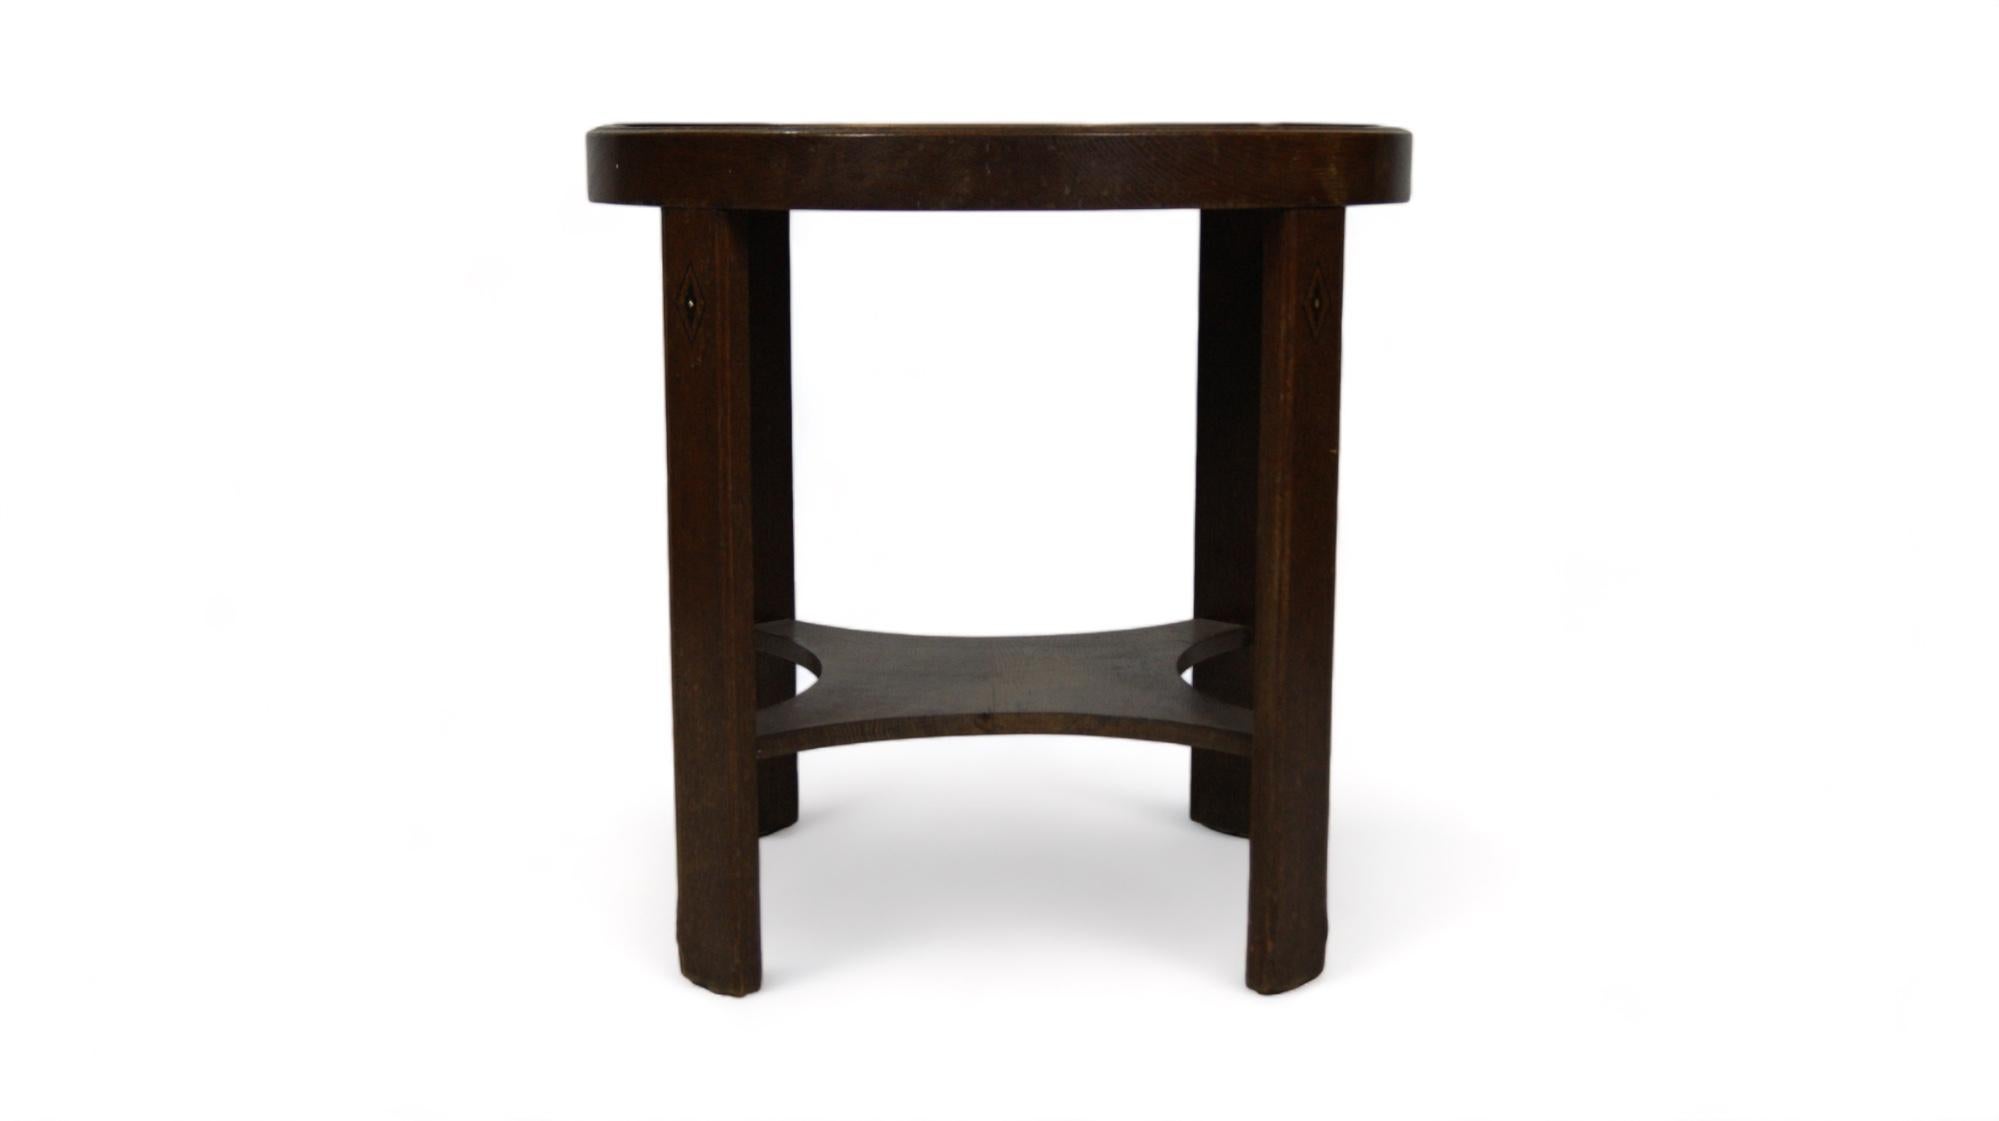 Le design de cette table fusionne la chaleur du bois et la robustesse du métal, créant un équilibre harmonieux entre classique et fonctionnel.

Le bois, dans des tons riches et profonds, montre la patine du temps, révélant des grains et des nœuds